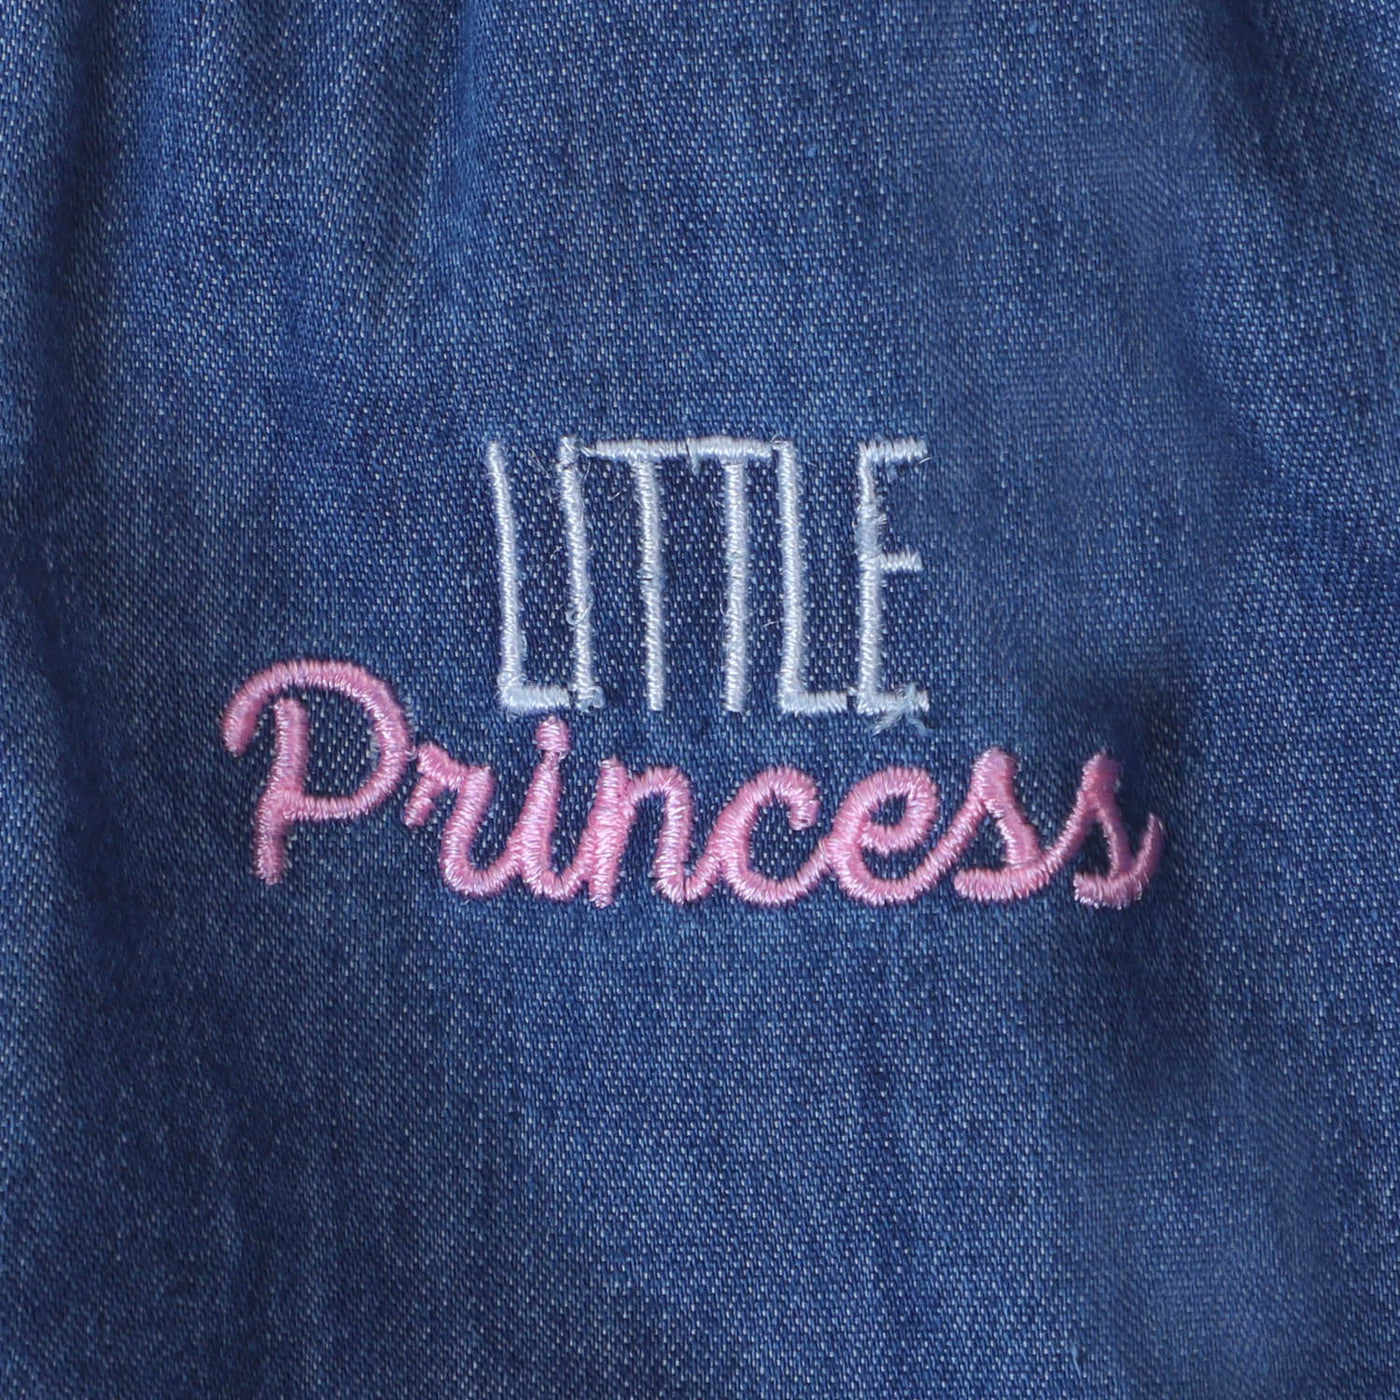 Infant Girls Little Princess 2Pcs Suit